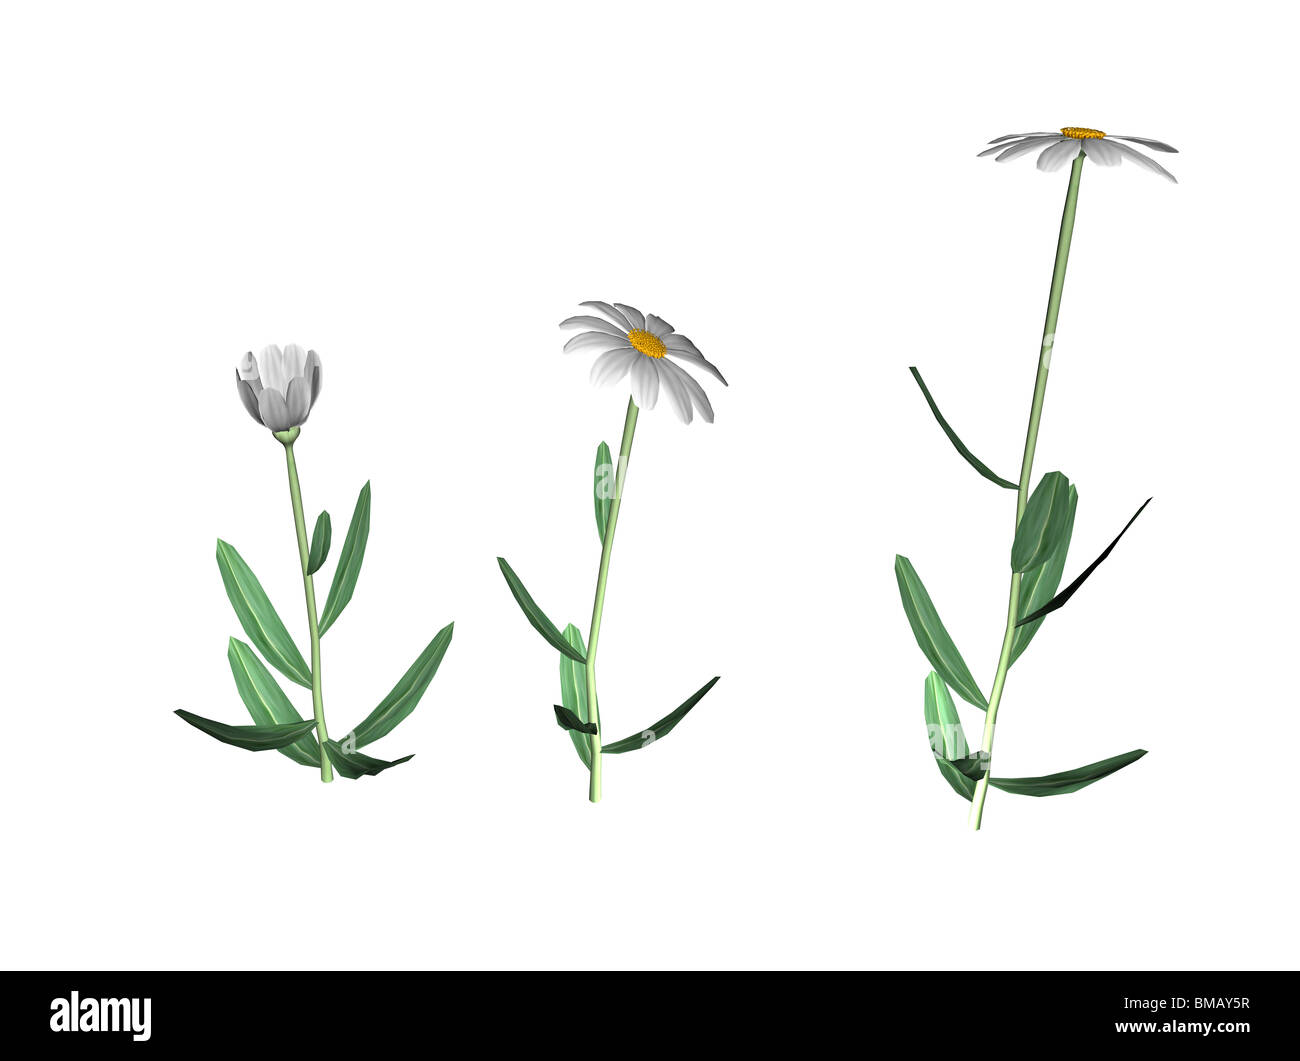 Illustrazione di daisy in 3 diverse fasi Foto Stock